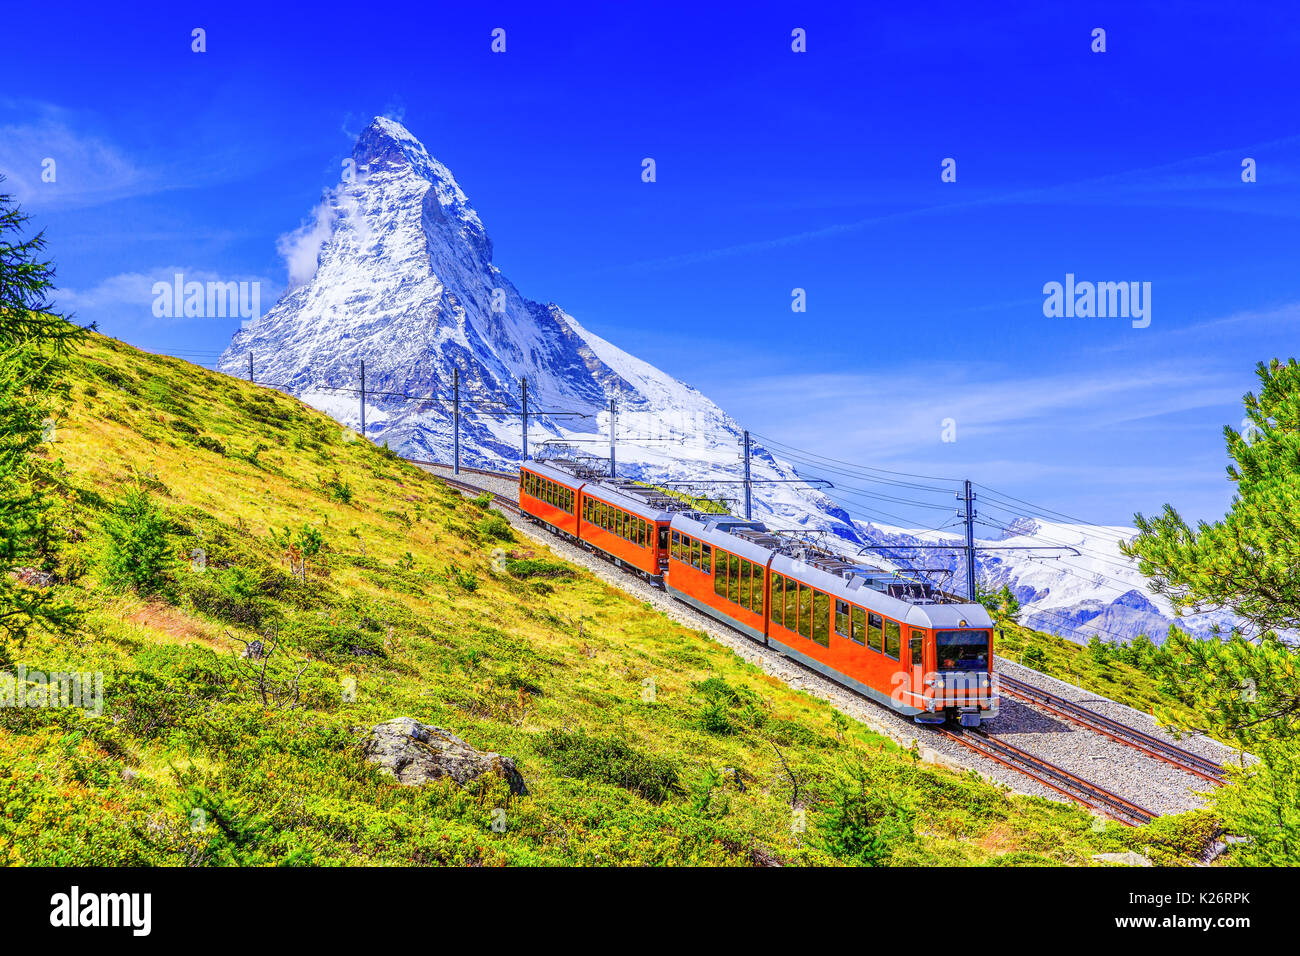 Zermatt, Switzerland. Gornergrat tourist train with Matterhorn mountain in the background. Valais region. Stock Photo